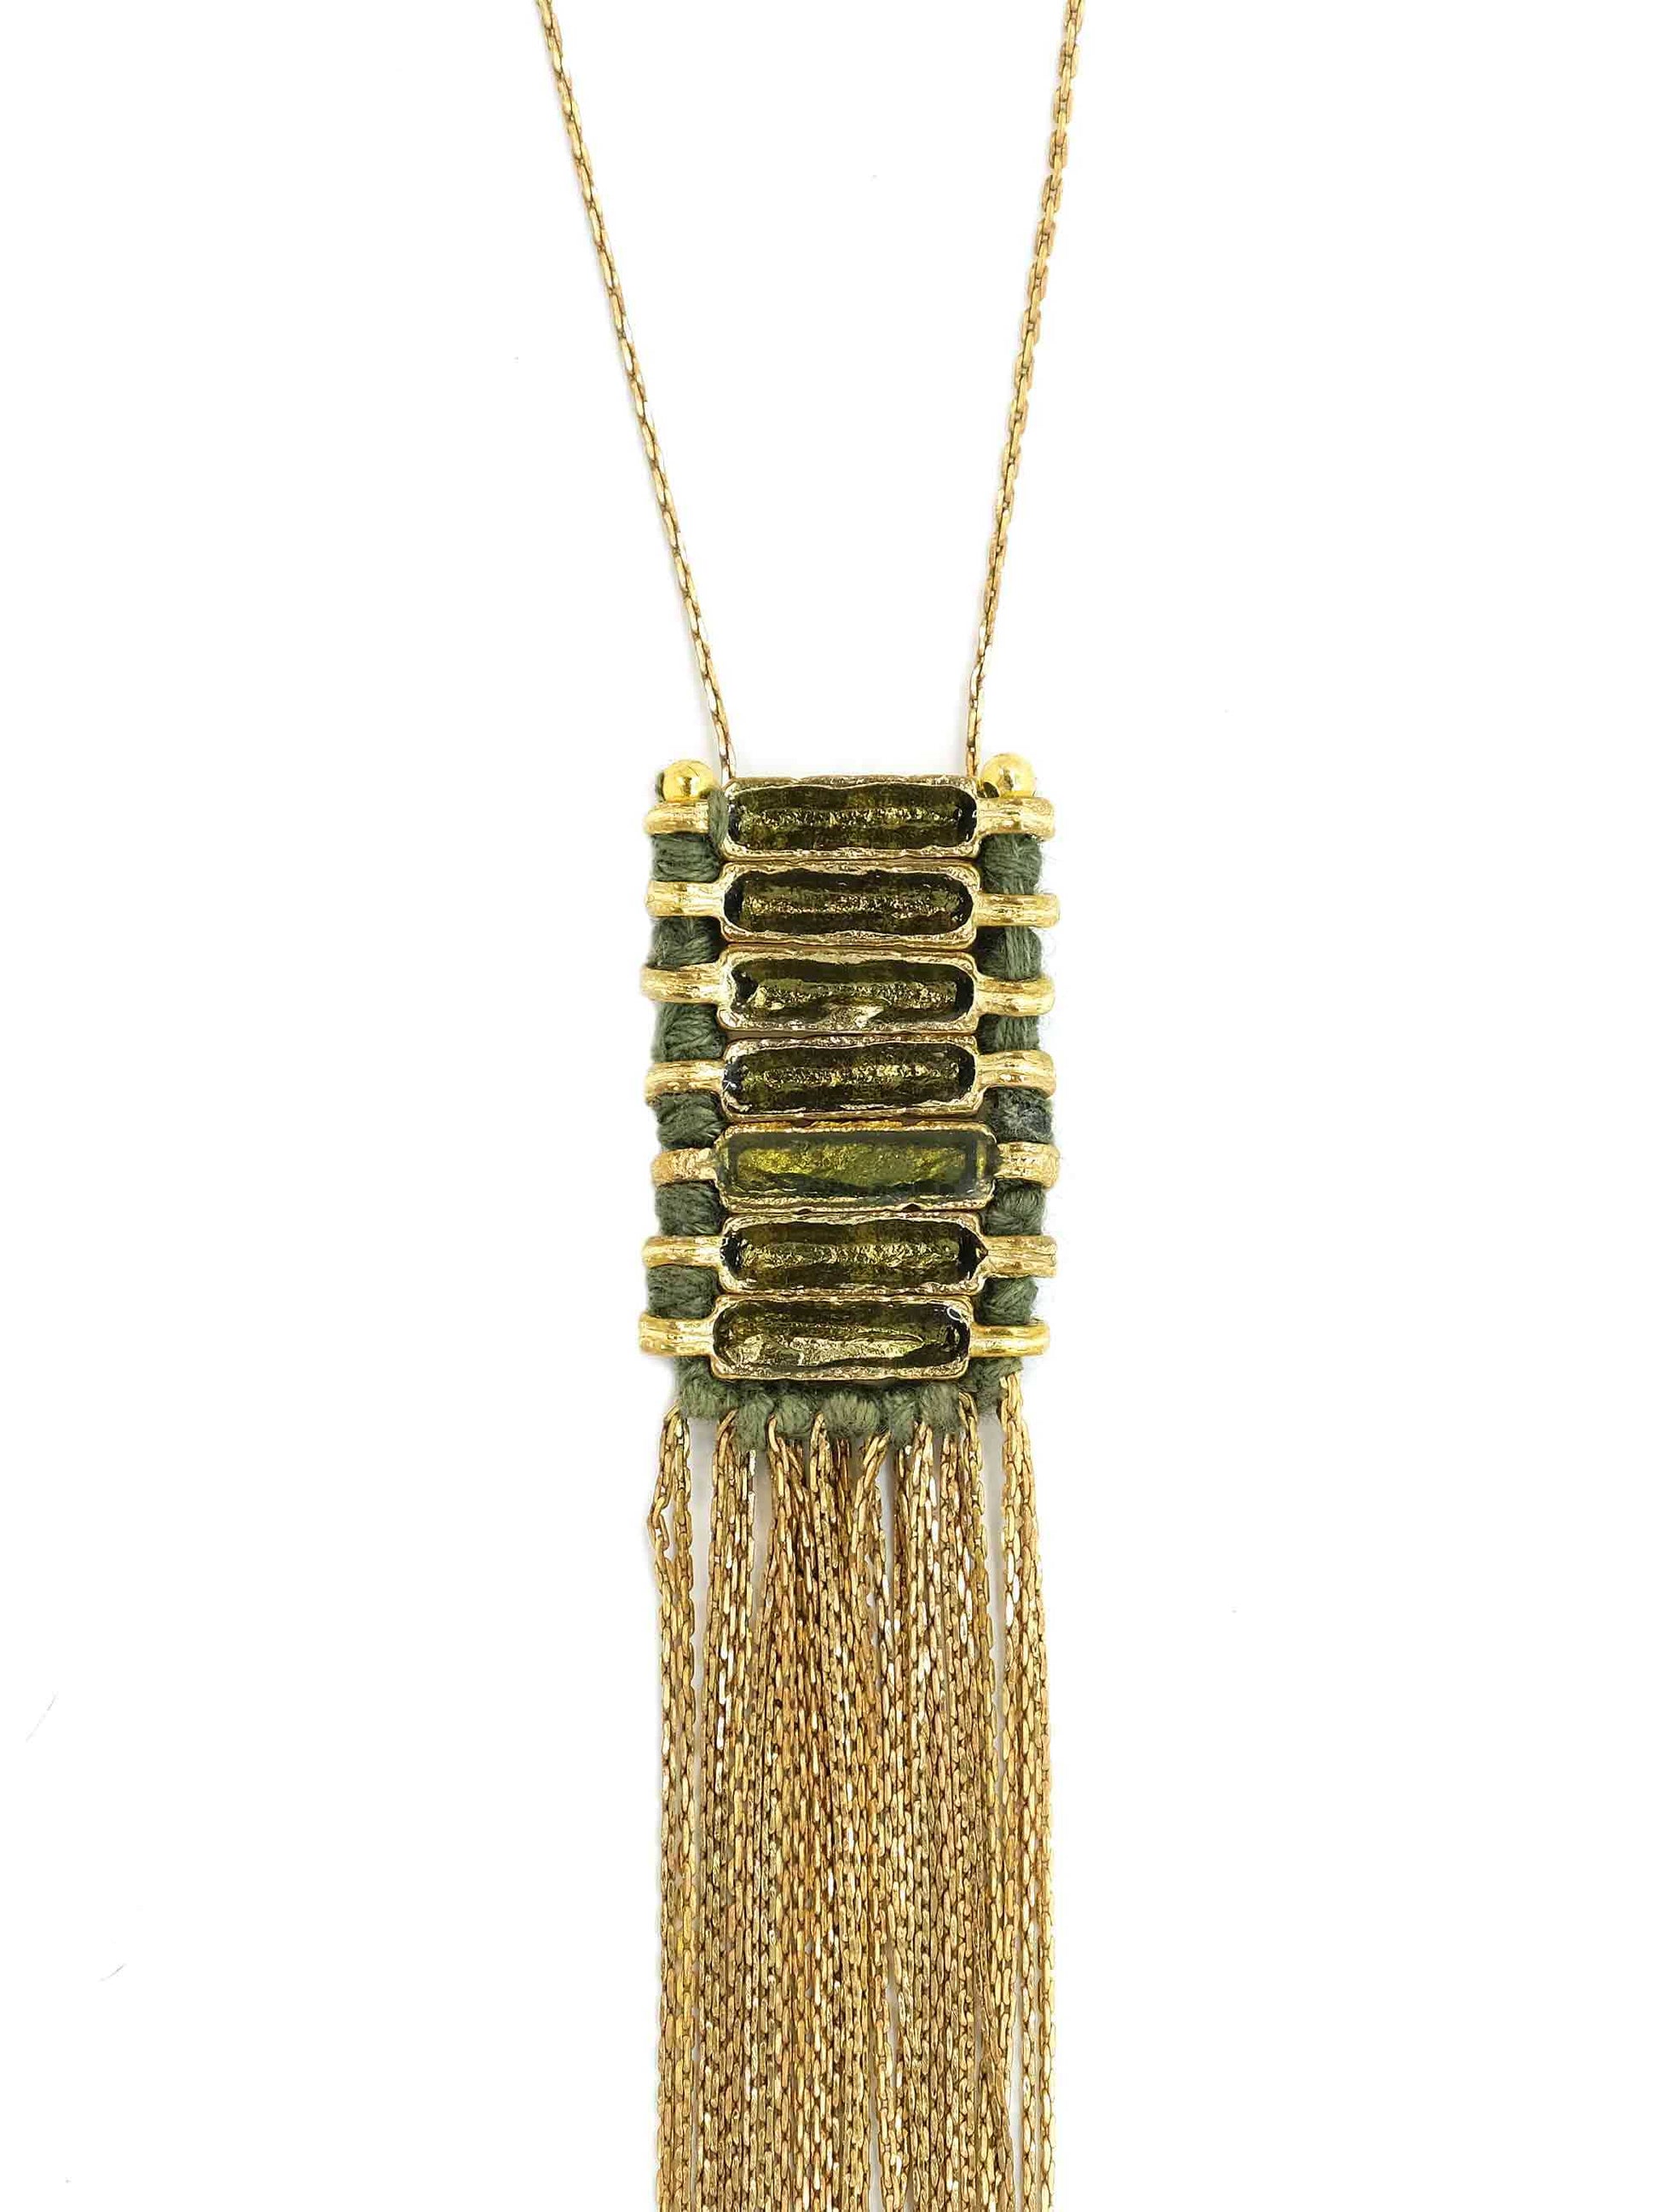 Khaki Enamel Pendant Necklace with Gold Fringing